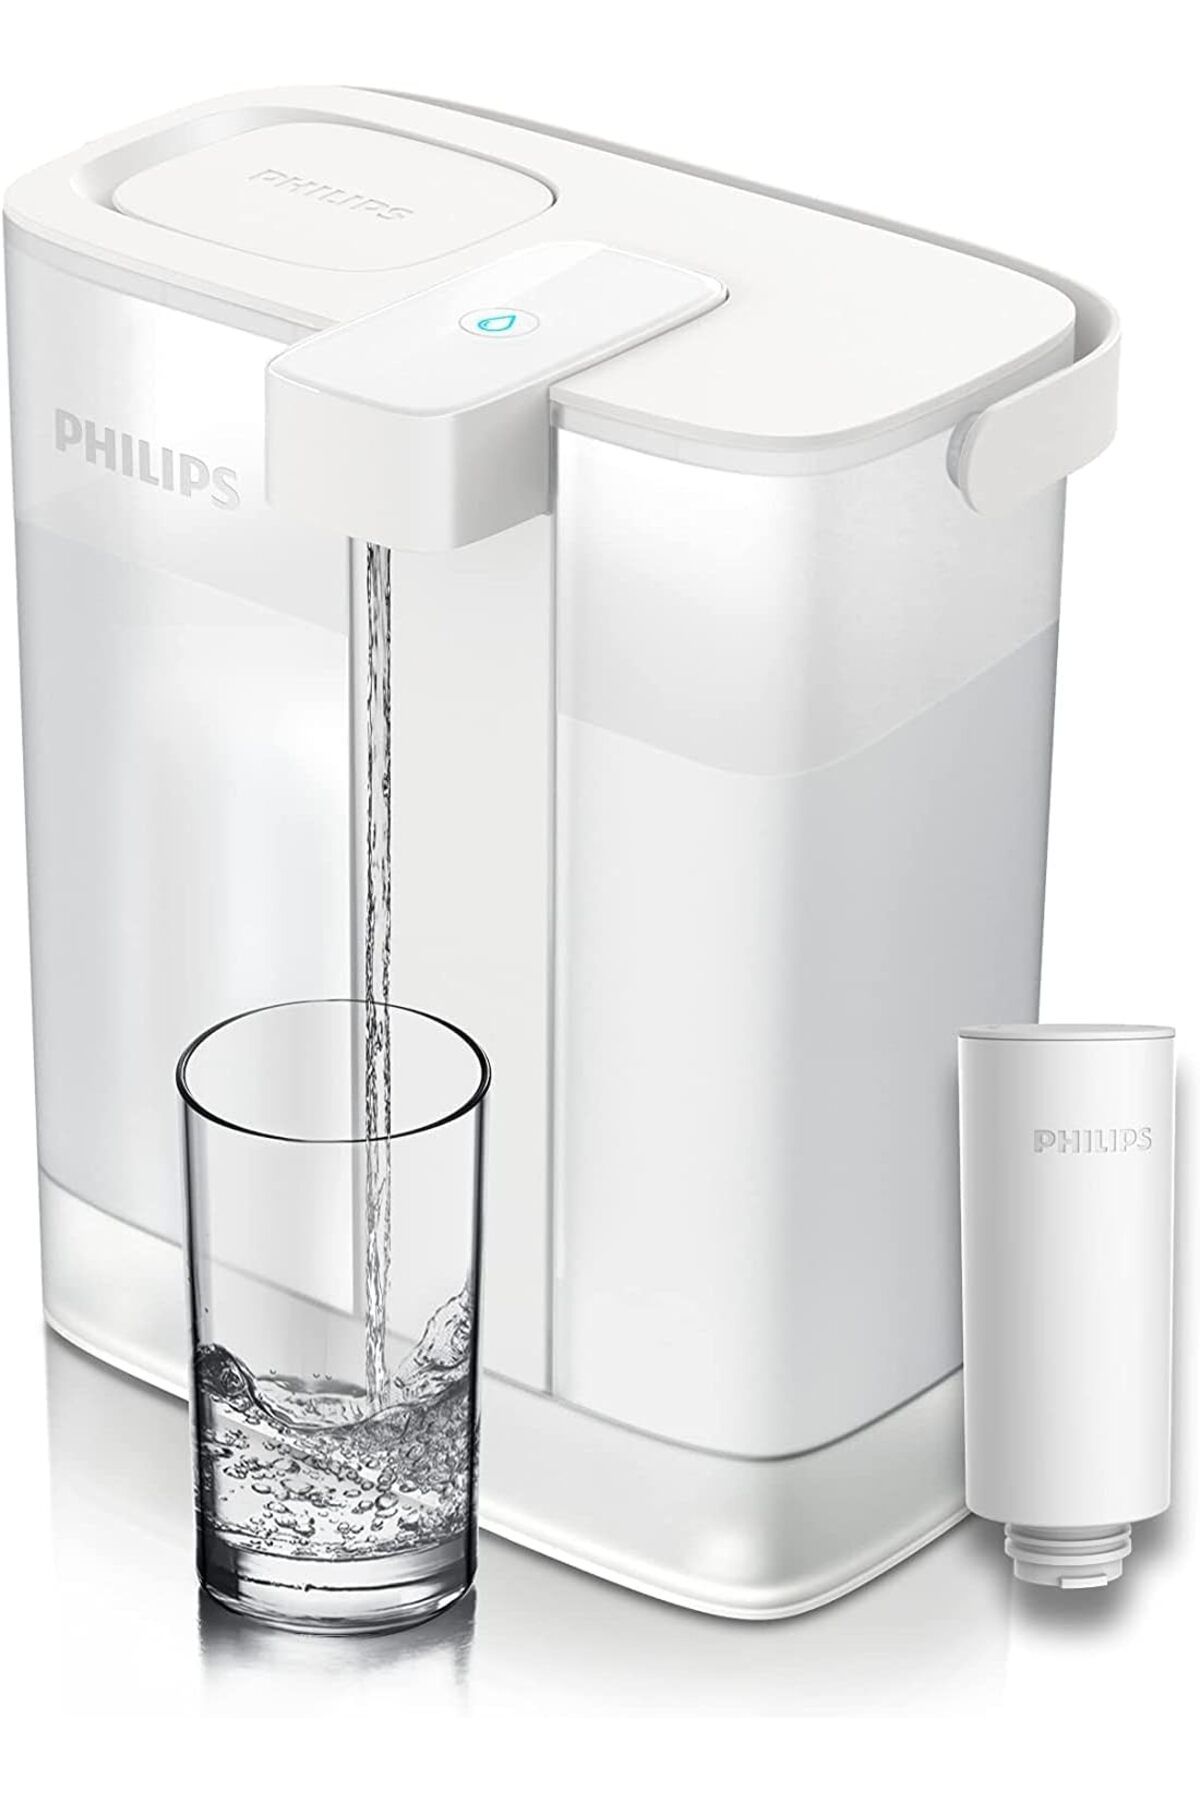 Philips Anında Su Filtresi 3l kapasiteli filtre sürahisi USB-C bağlantı noktası üzerinden şarj edilr